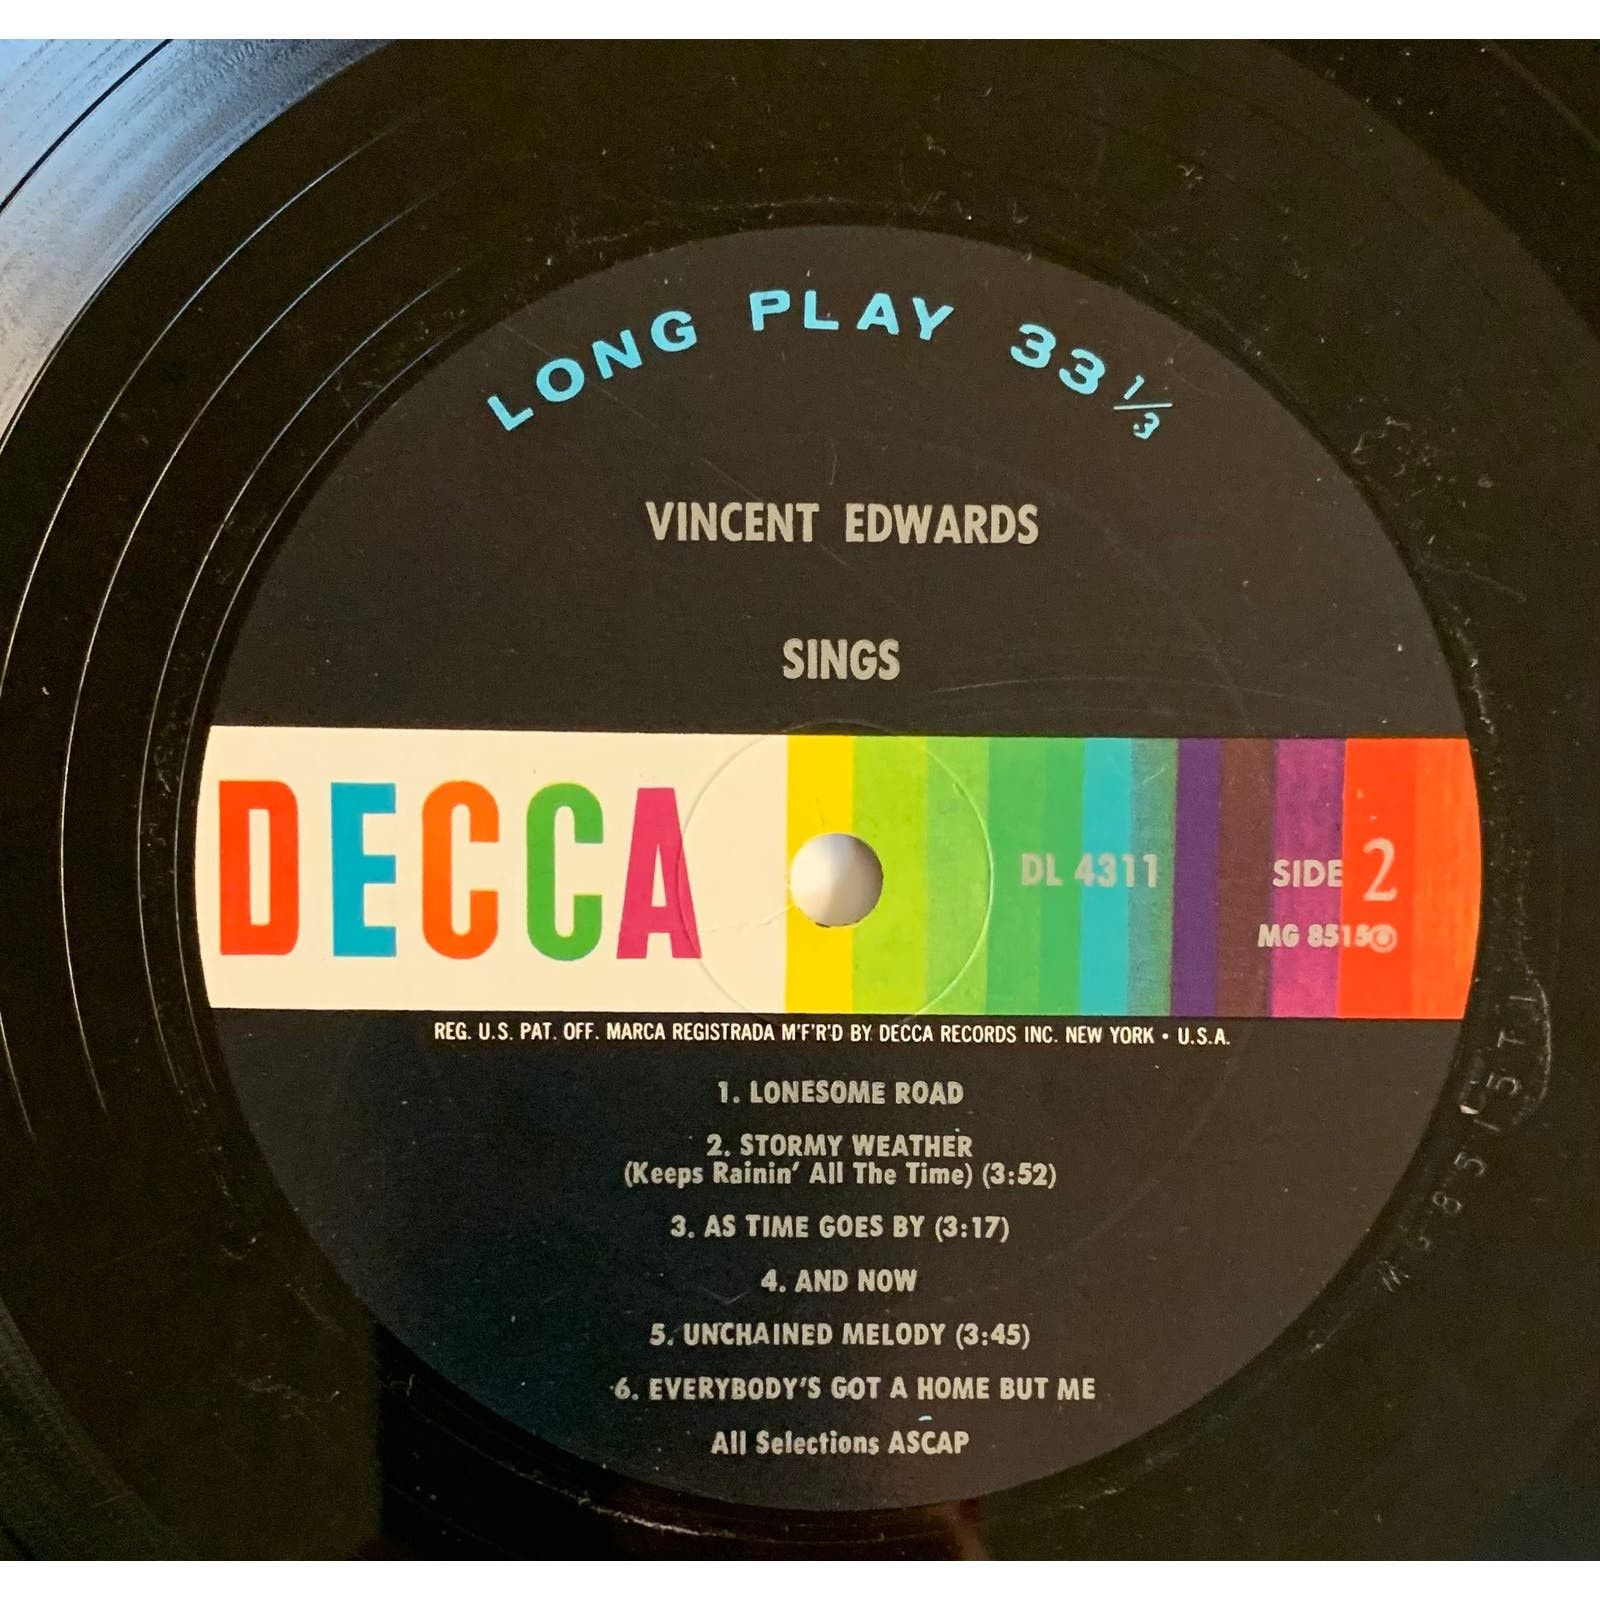 Vinyl Factory Vincent Edwards Sings Ben Casey 1962 DECCA DL 4311 Vinyl LP Size ONE SIZE - 4 Preview